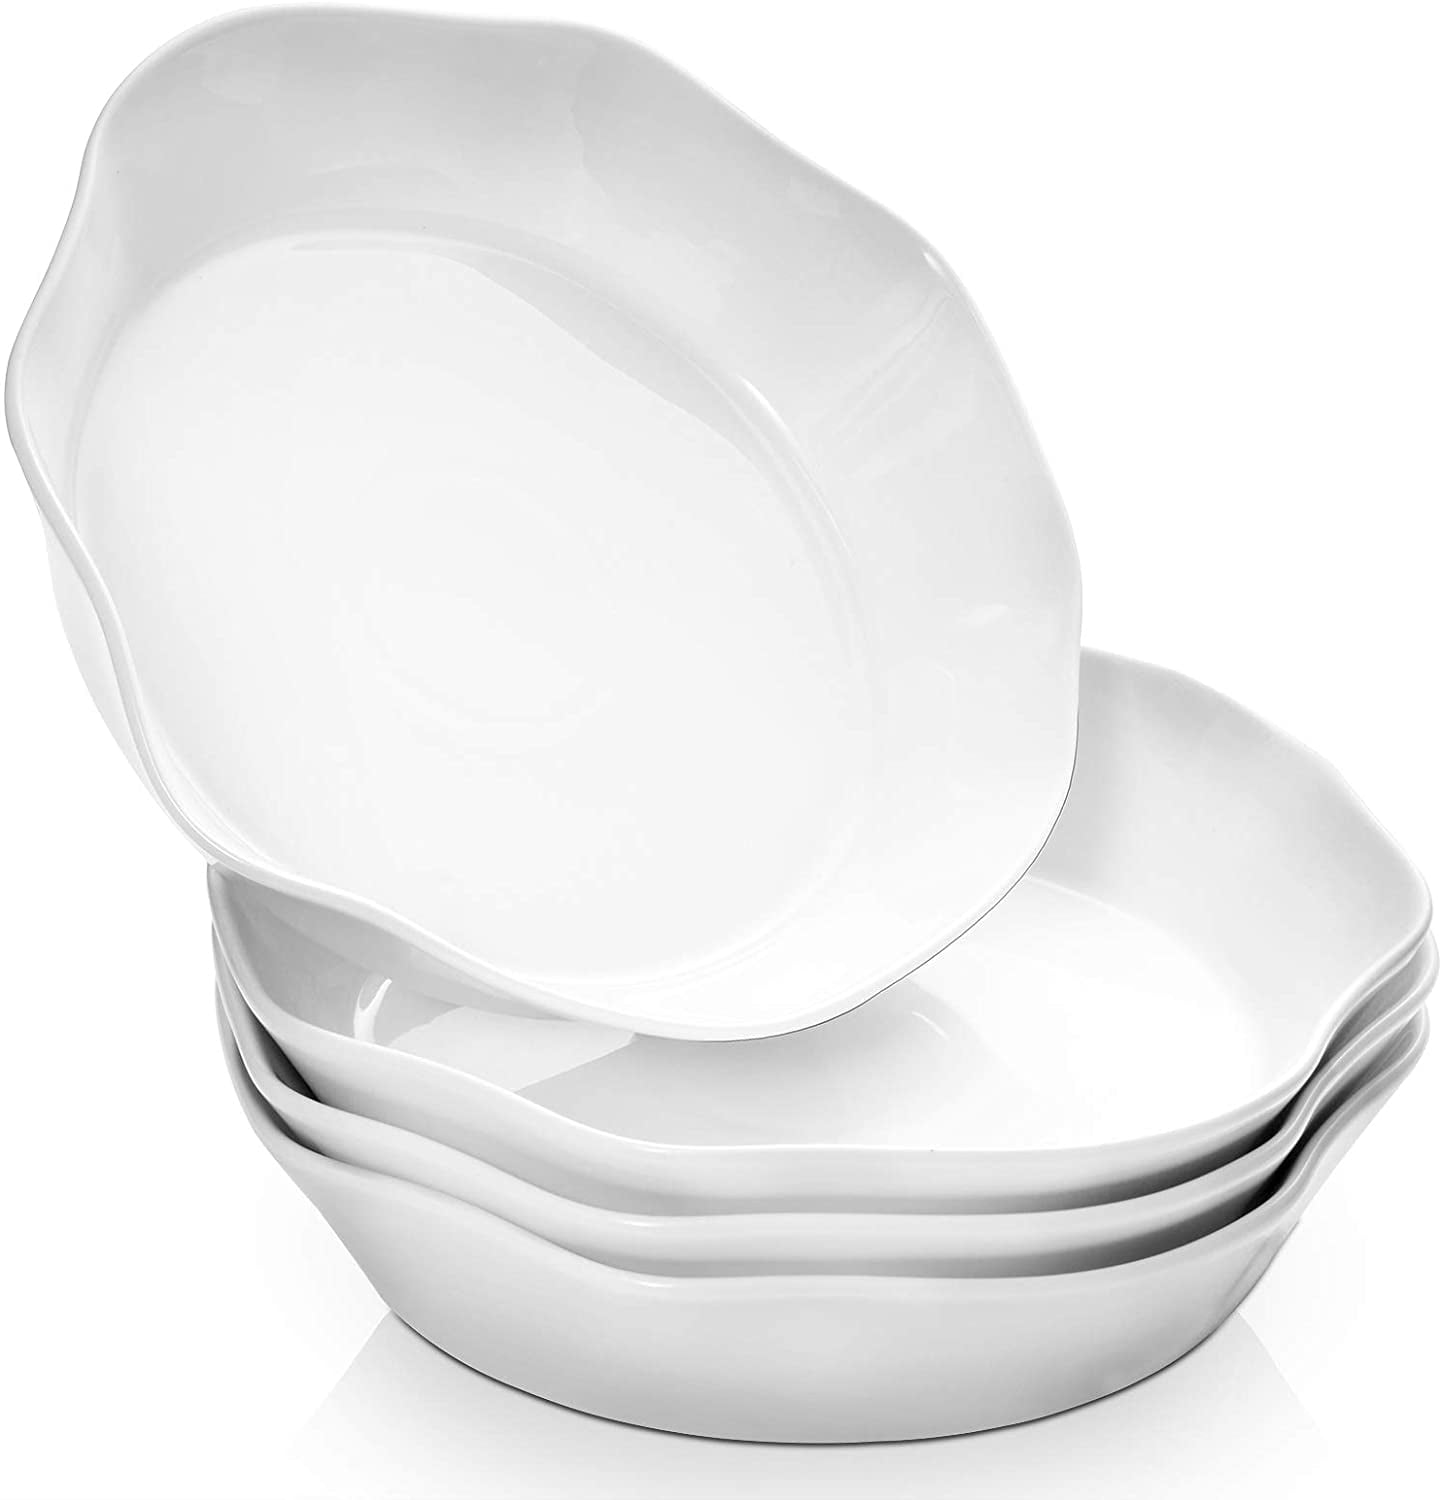 42-Oz Porcelain Soup/Noodle/Cereal Bowl，Porcelain Pasta/Salad Bowls,Elegant White,Set of 6 Serving Bowls 